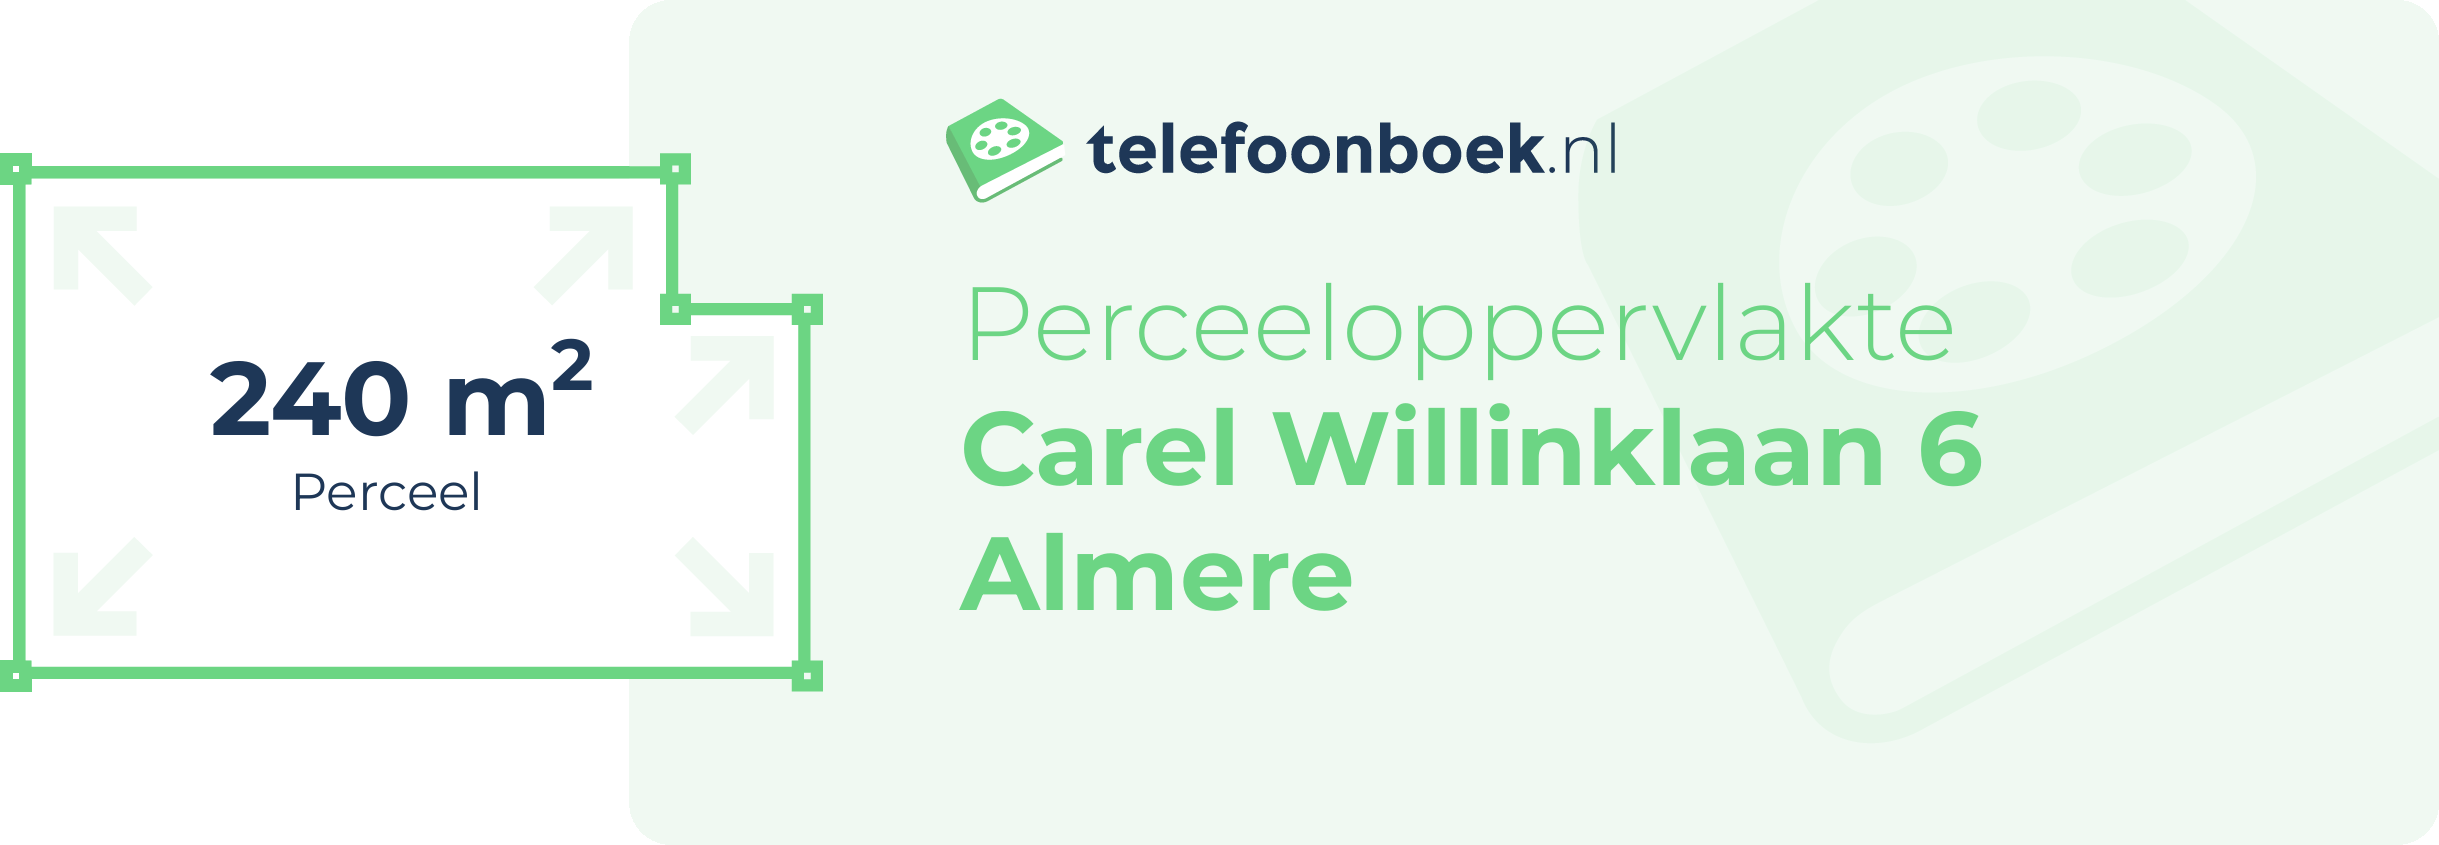 Perceeloppervlakte Carel Willinklaan 6 Almere